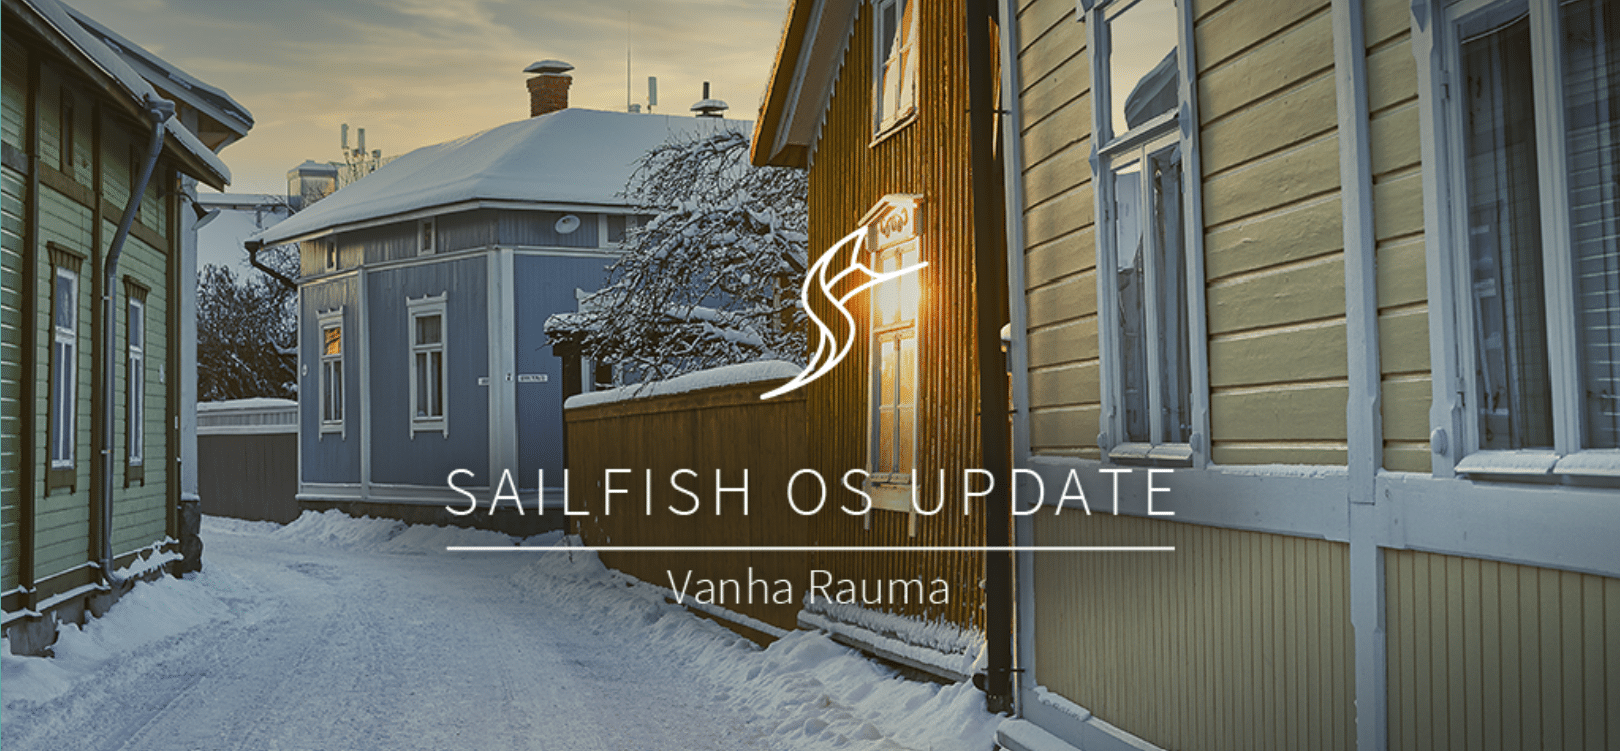 Sailfish OS 4.4 "Vanha Rauma" lançado com melhorias no aplicativo de câmera, Gecko atualizado